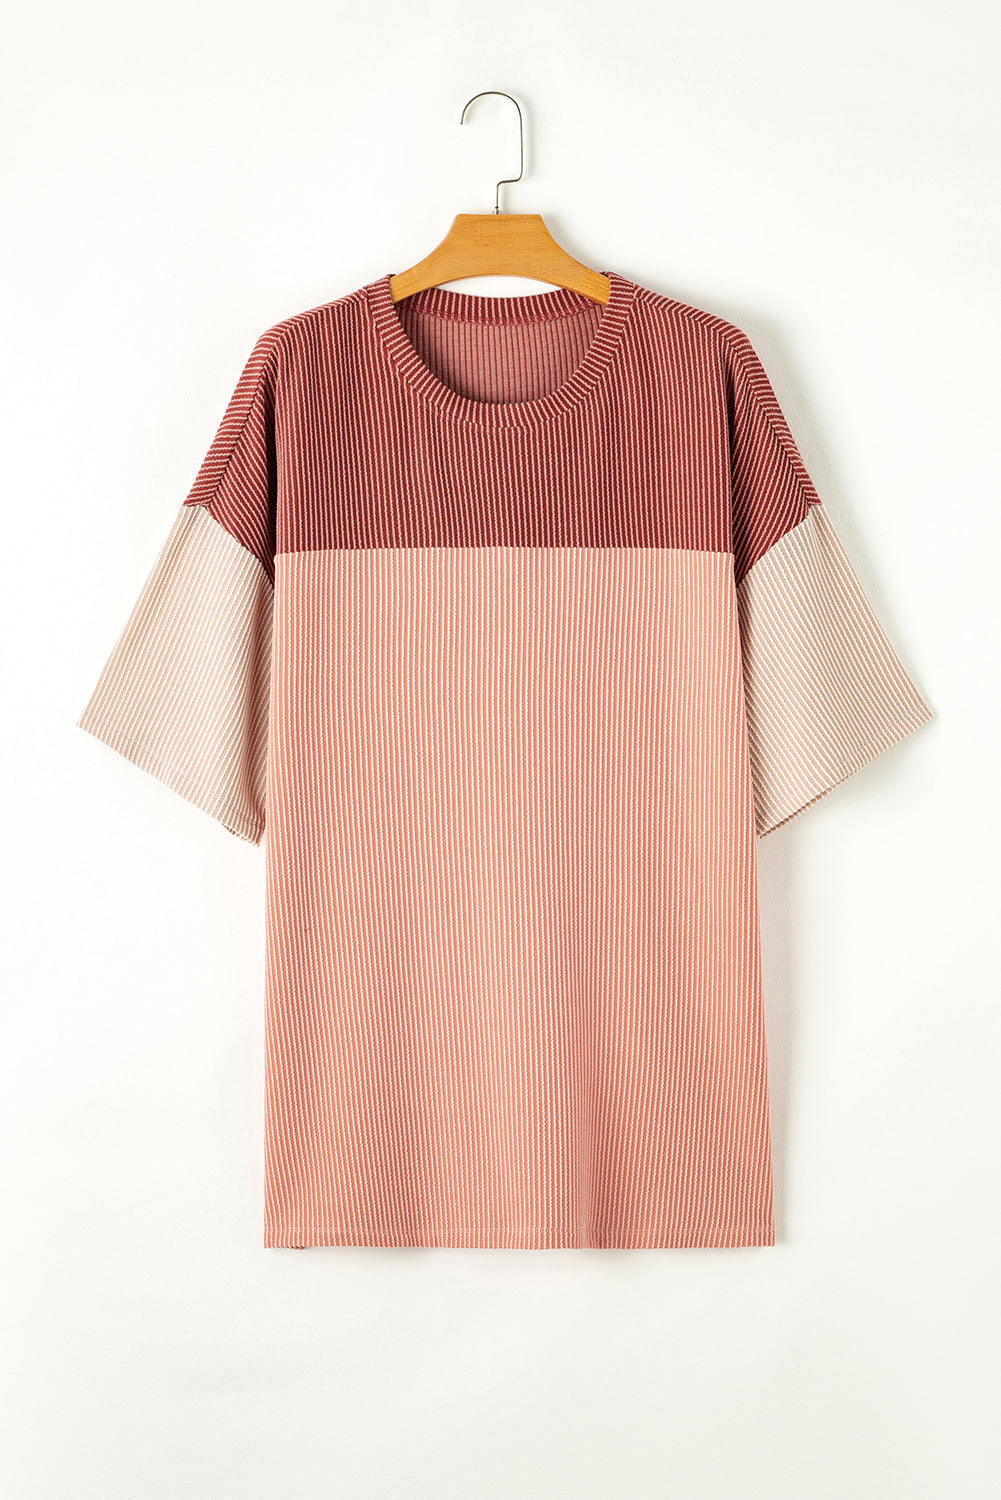 Ružičasto ružičasta rebrasta Colorblock majica velike veličine